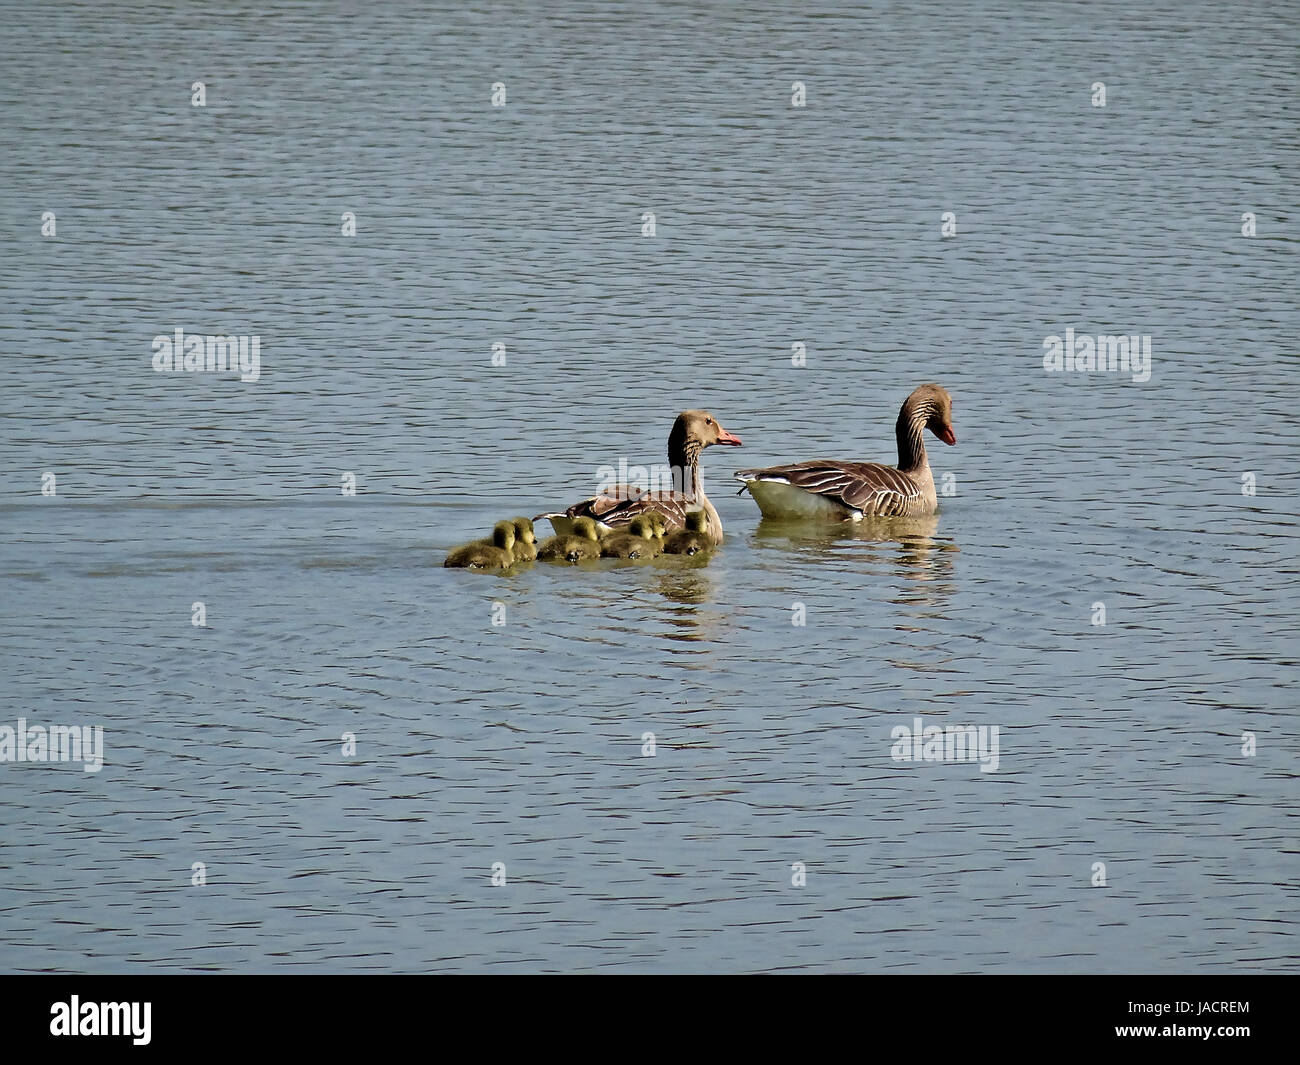 Wildtiere in Salburua neben Vitoria/Gasteiz, Baskenland, Spanien. Eine Familie von Enten kreuzt einen See in einem sehr idyllischen Bild. Stockfoto